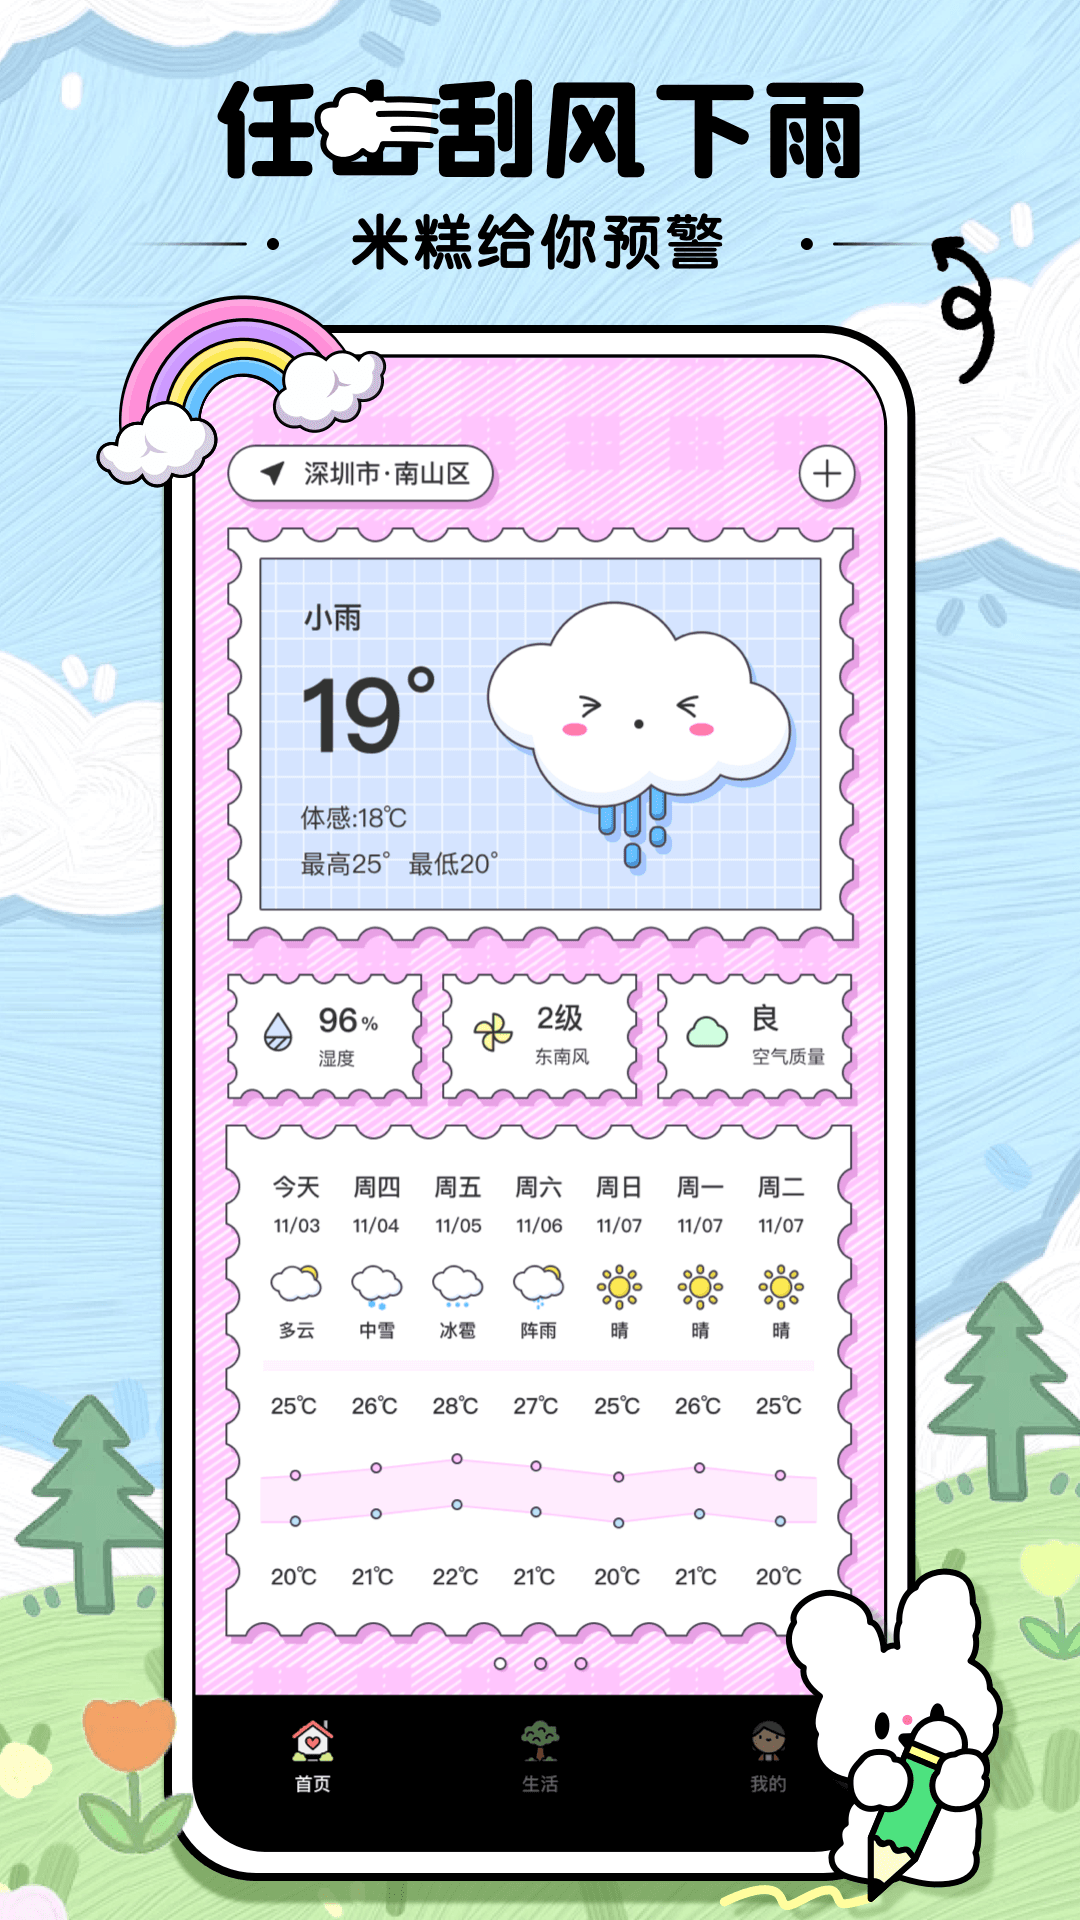 米糕天气物语app下载,米糕天气物语app官方版 v1.0.4